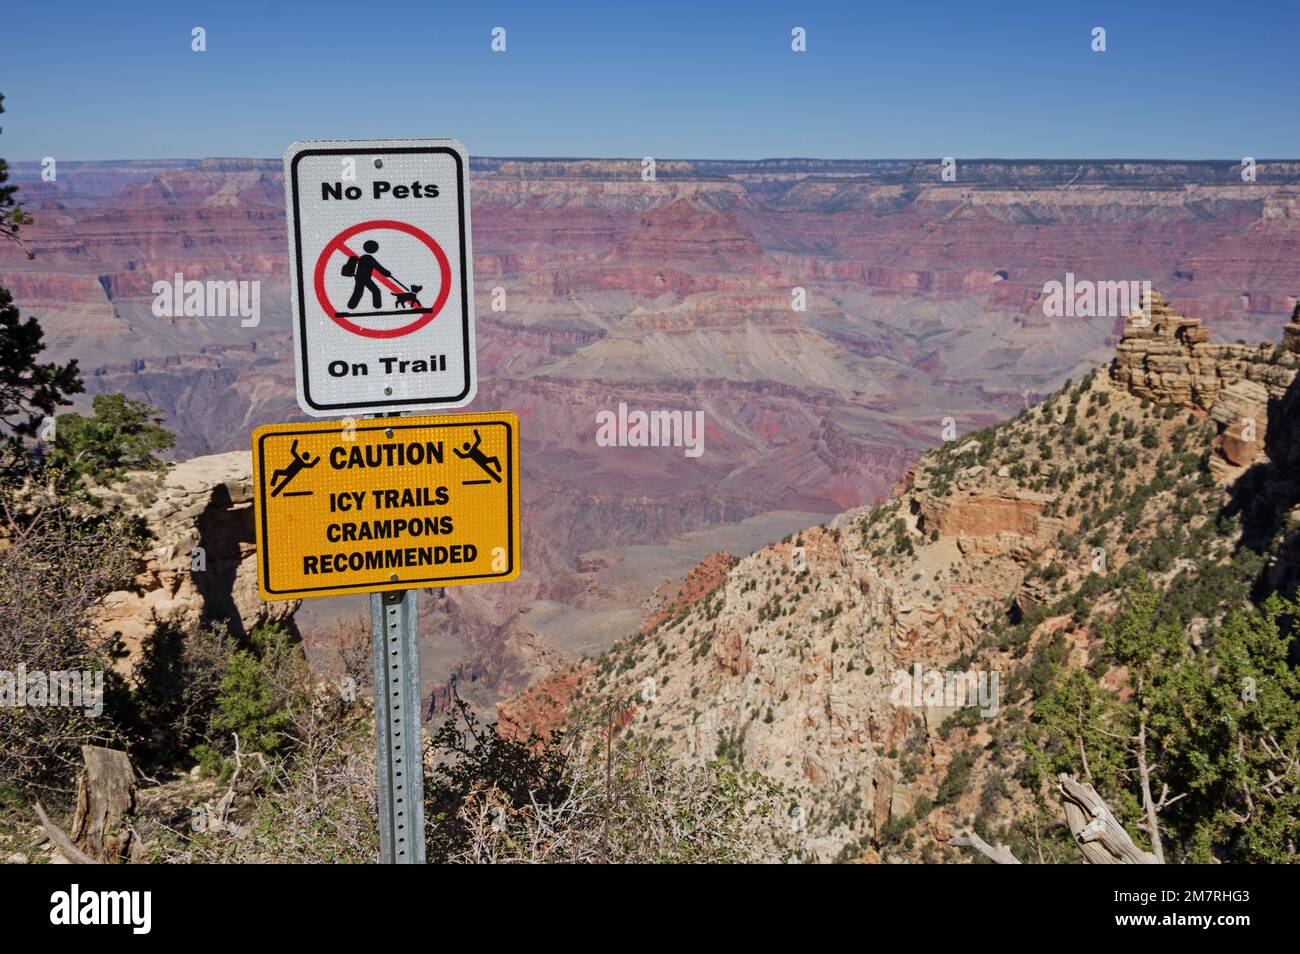 Panneaux d'avertissement du Grand Canyon pas d'animaux sur la piste et attention sentiers glacés crampons recommandés près du sommet du South Kaibab Trail Banque D'Images